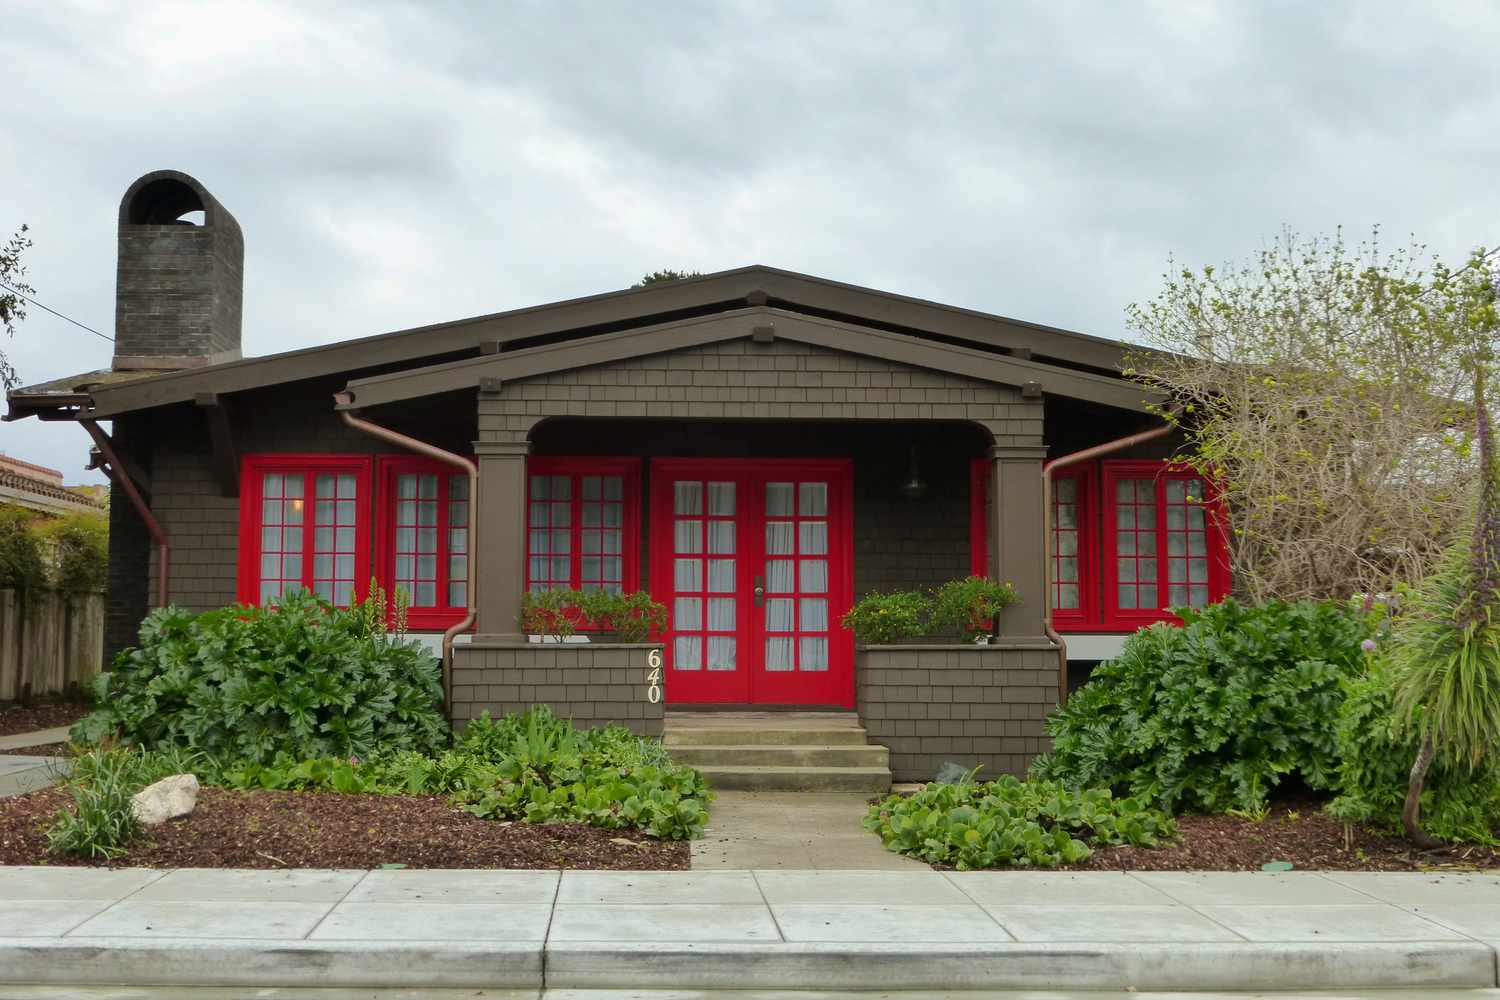 Vorderansicht eines braun geschindelten Bungalows mit roten Türen und Fenstern